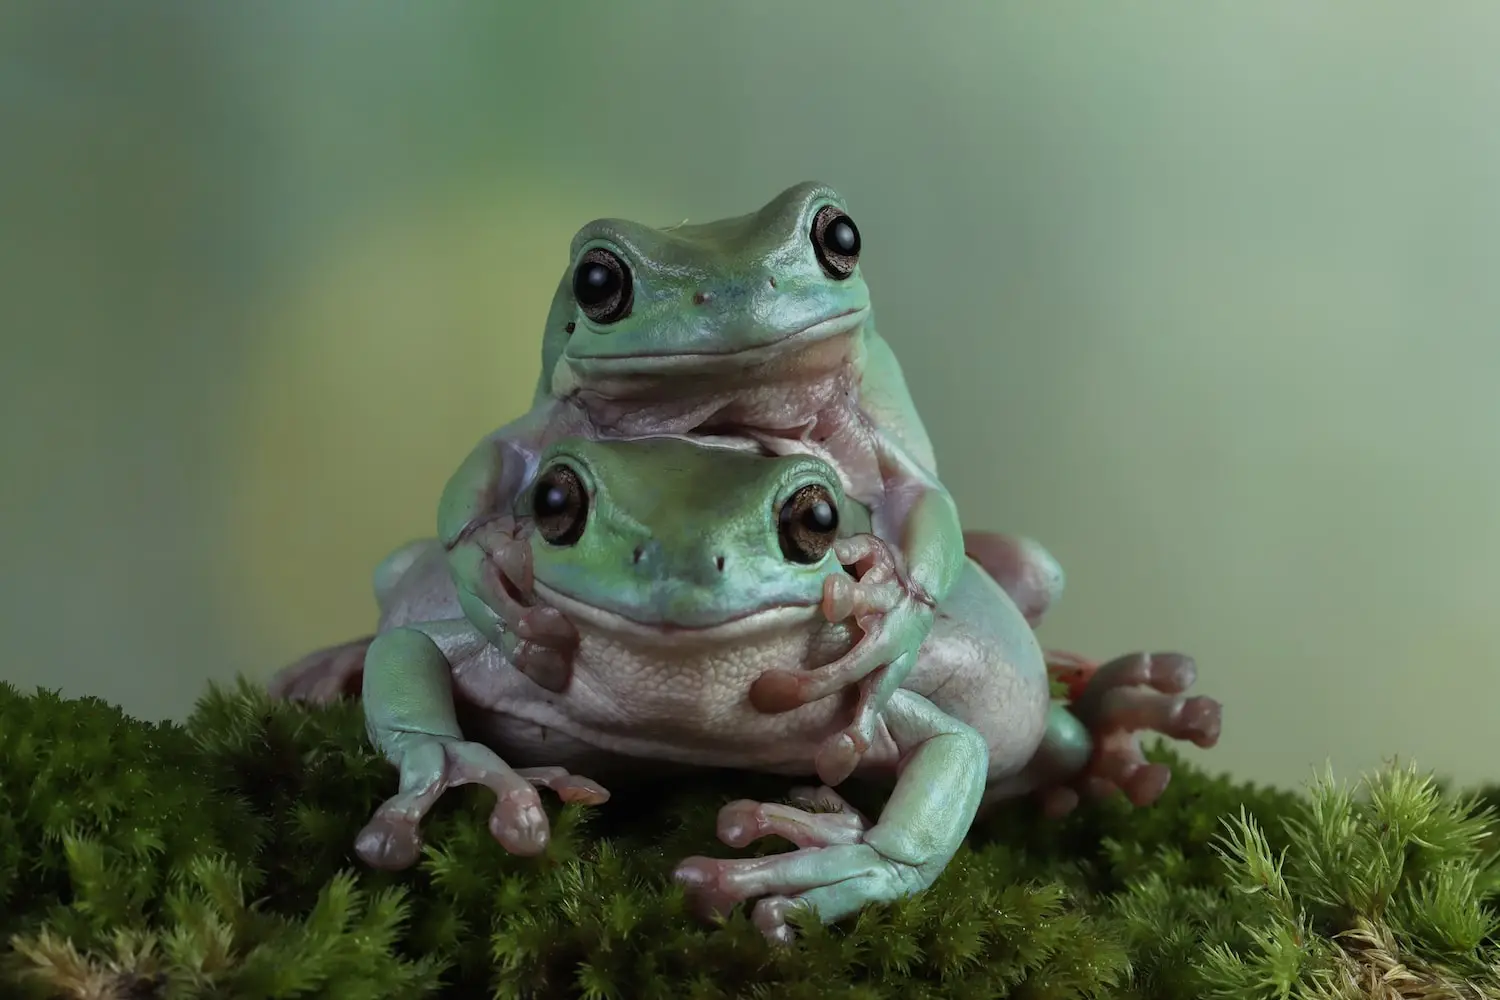  Ếch (Frogs)
